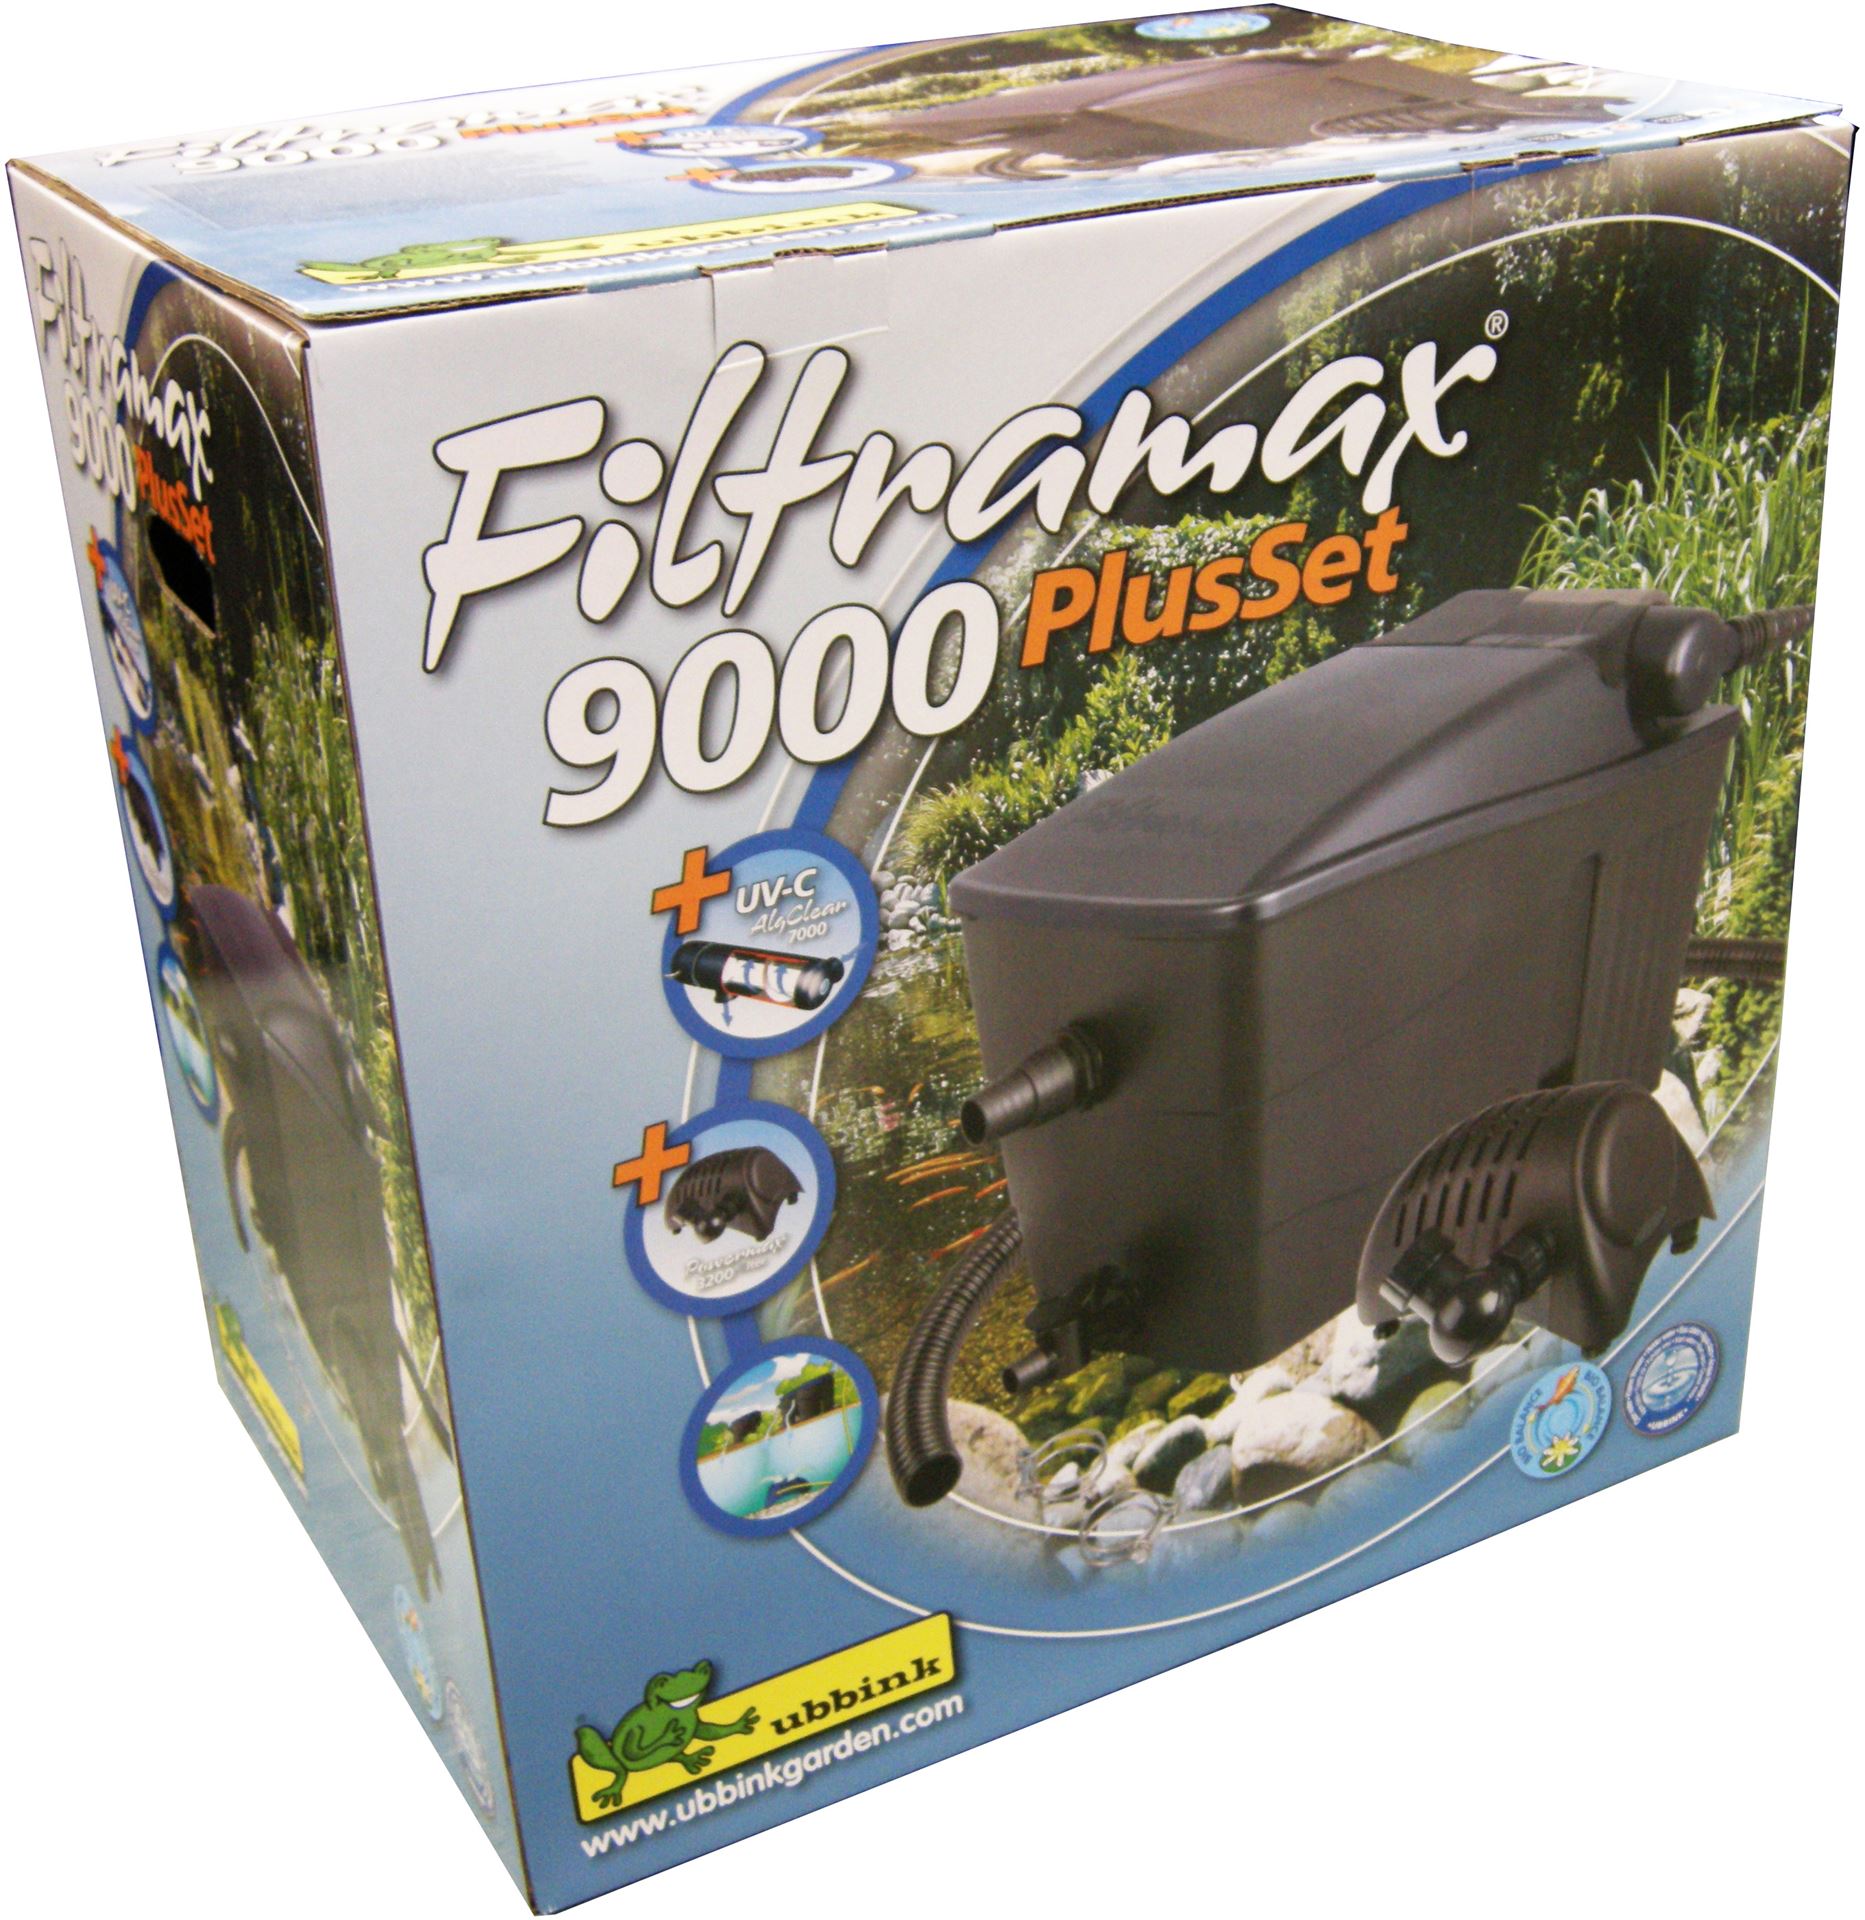 Filtramax-9000-PlusSet-biologisch-mechanische-modulaire-filtersysteem-met-2-kamers-UVC-9w-Smartmax-2